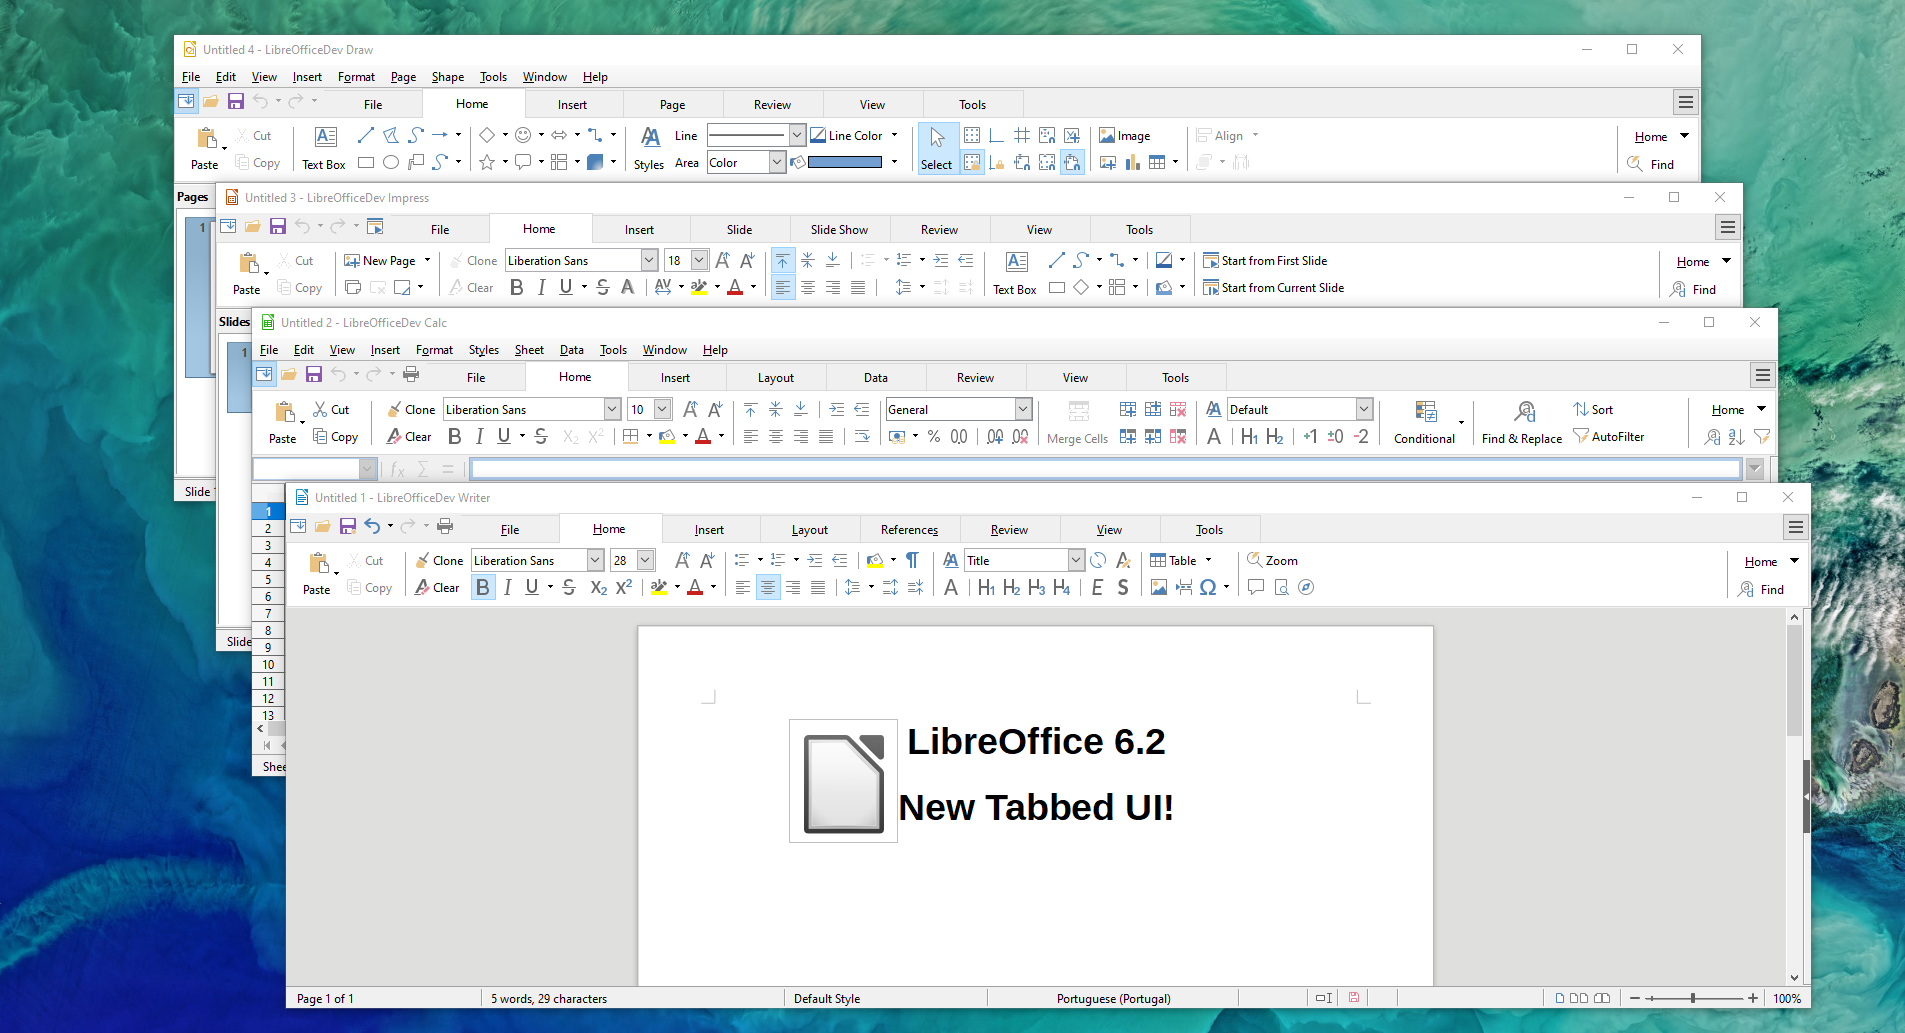 LibreOffice 6.2: interfaccia a schede